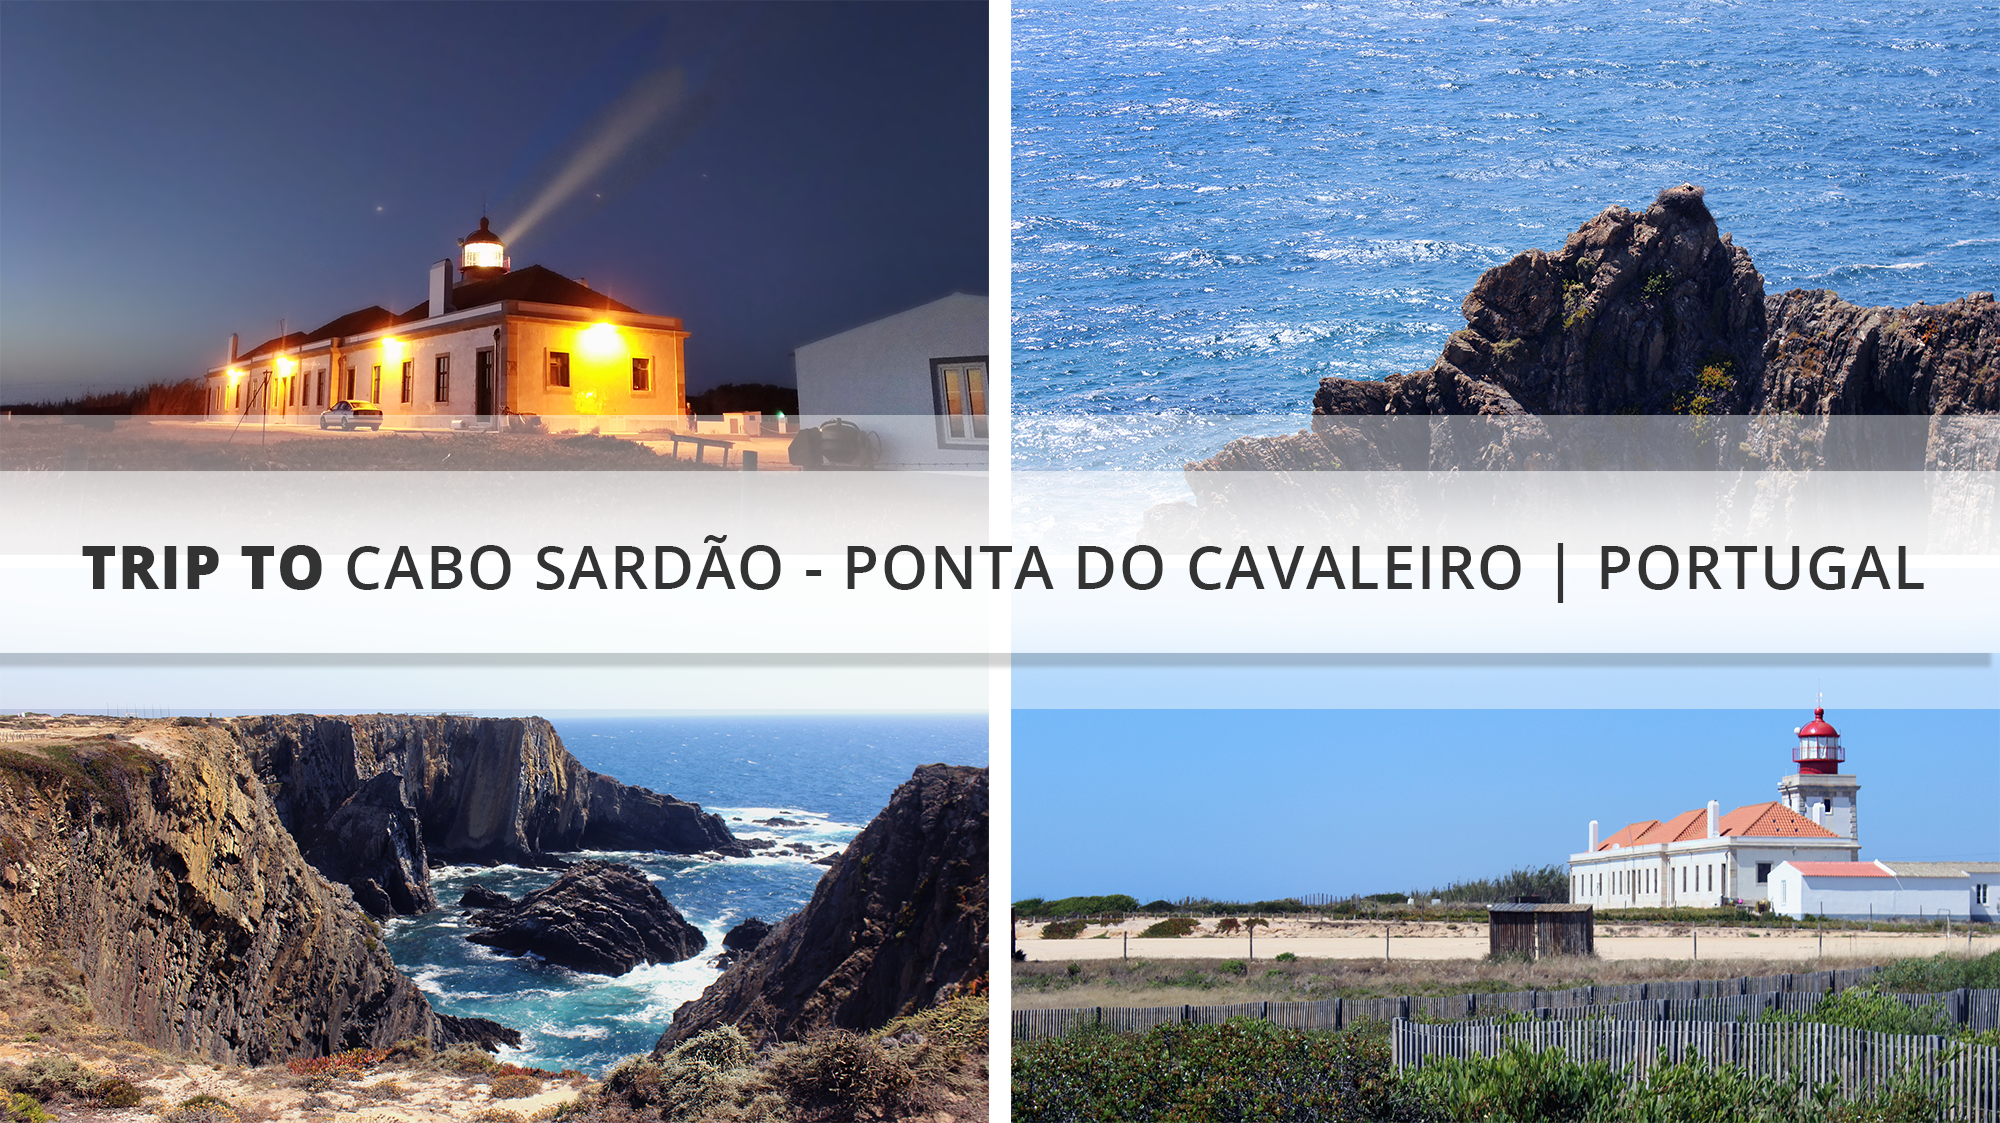 Trip to Cabo Sardao - Ponta do Cavaleiro | Portugal